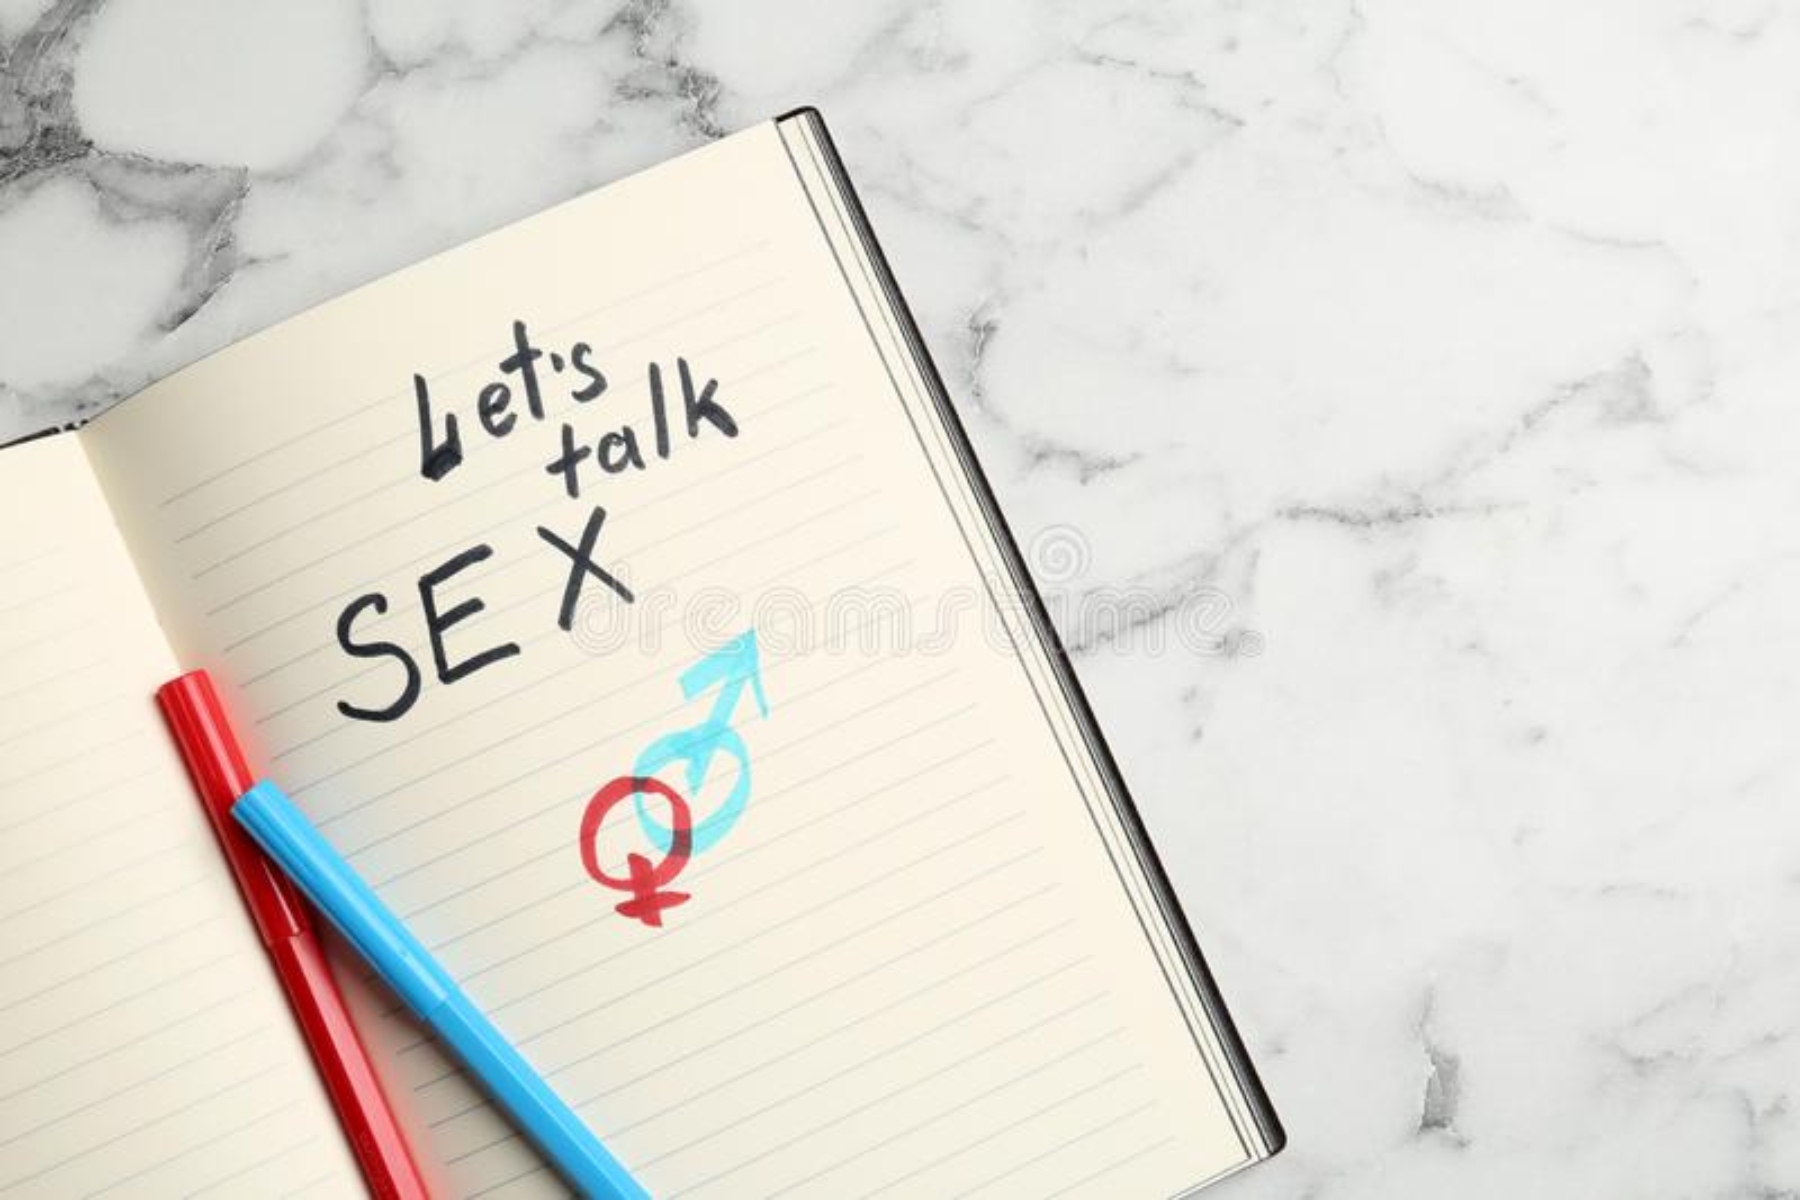 Μιλώντας για το σεξ: Γιατί, πού και πώς να μιλήσετε για το σεξ με τον σύντροφό σας;